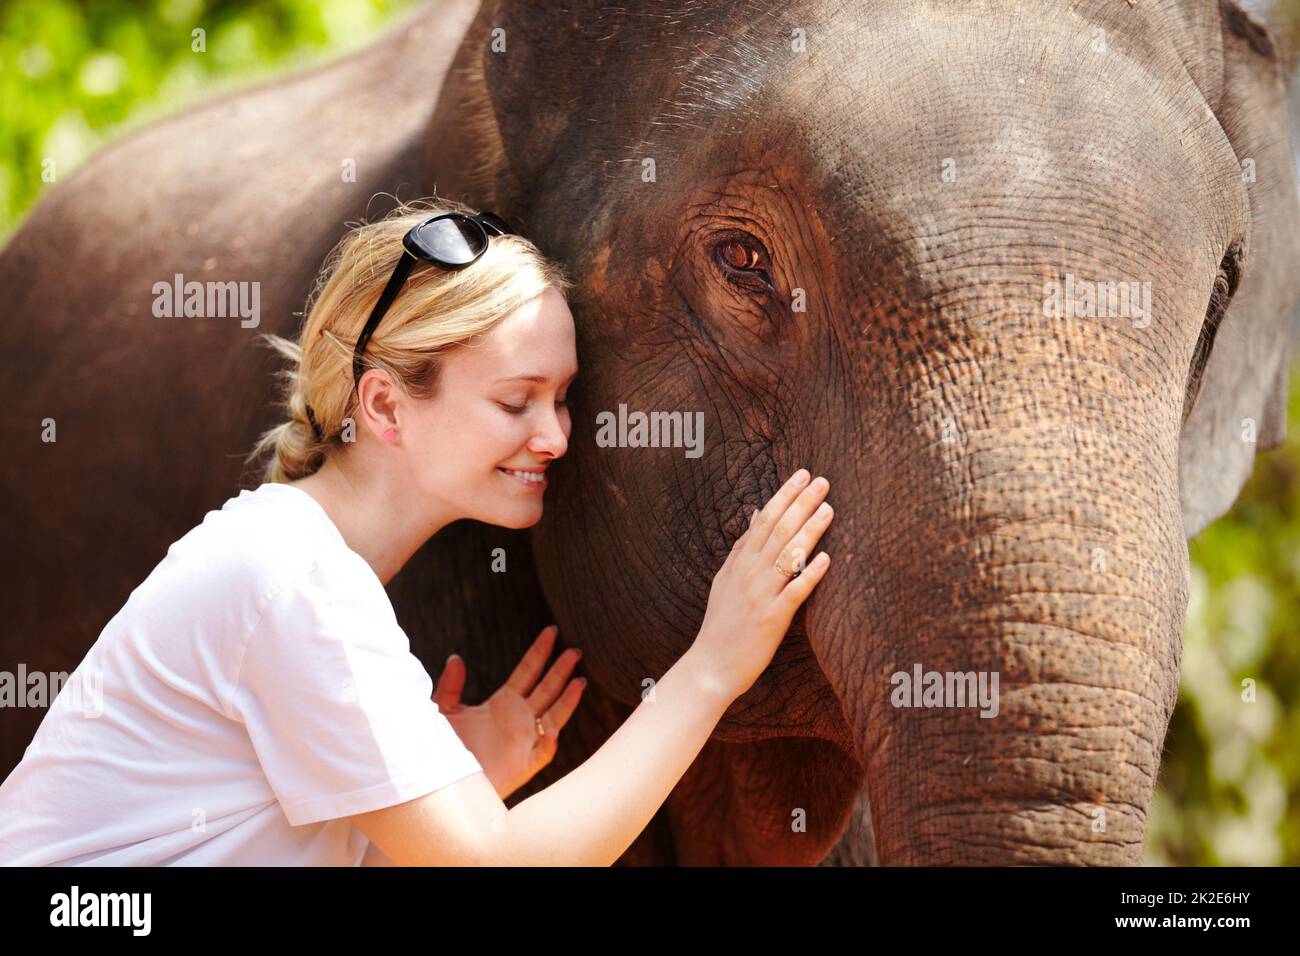 Un tocco di cura. Un giovane ricercatore carezza dolcemente un elefante asiatico in cattività - Thailandia. Foto Stock